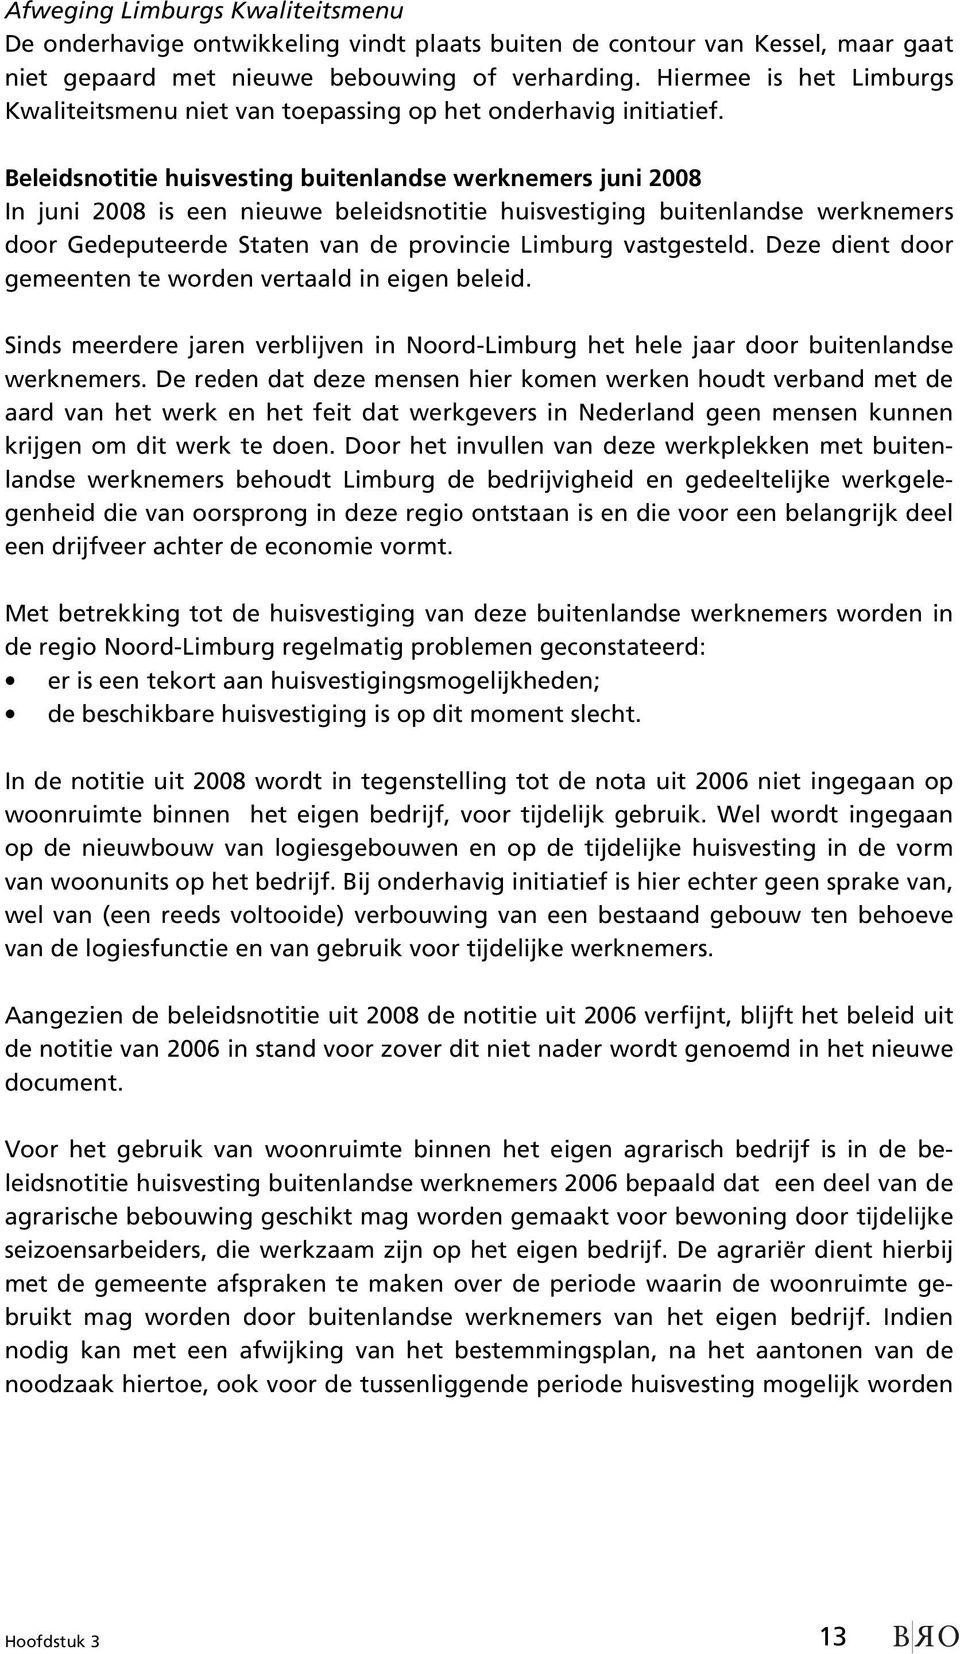 Beleidsnotitie huisvesting buitenlandse werknemers juni 2008 In juni 2008 is een nieuwe beleidsnotitie huisvestiging buitenlandse werknemers door Gedeputeerde Staten van de provincie Limburg